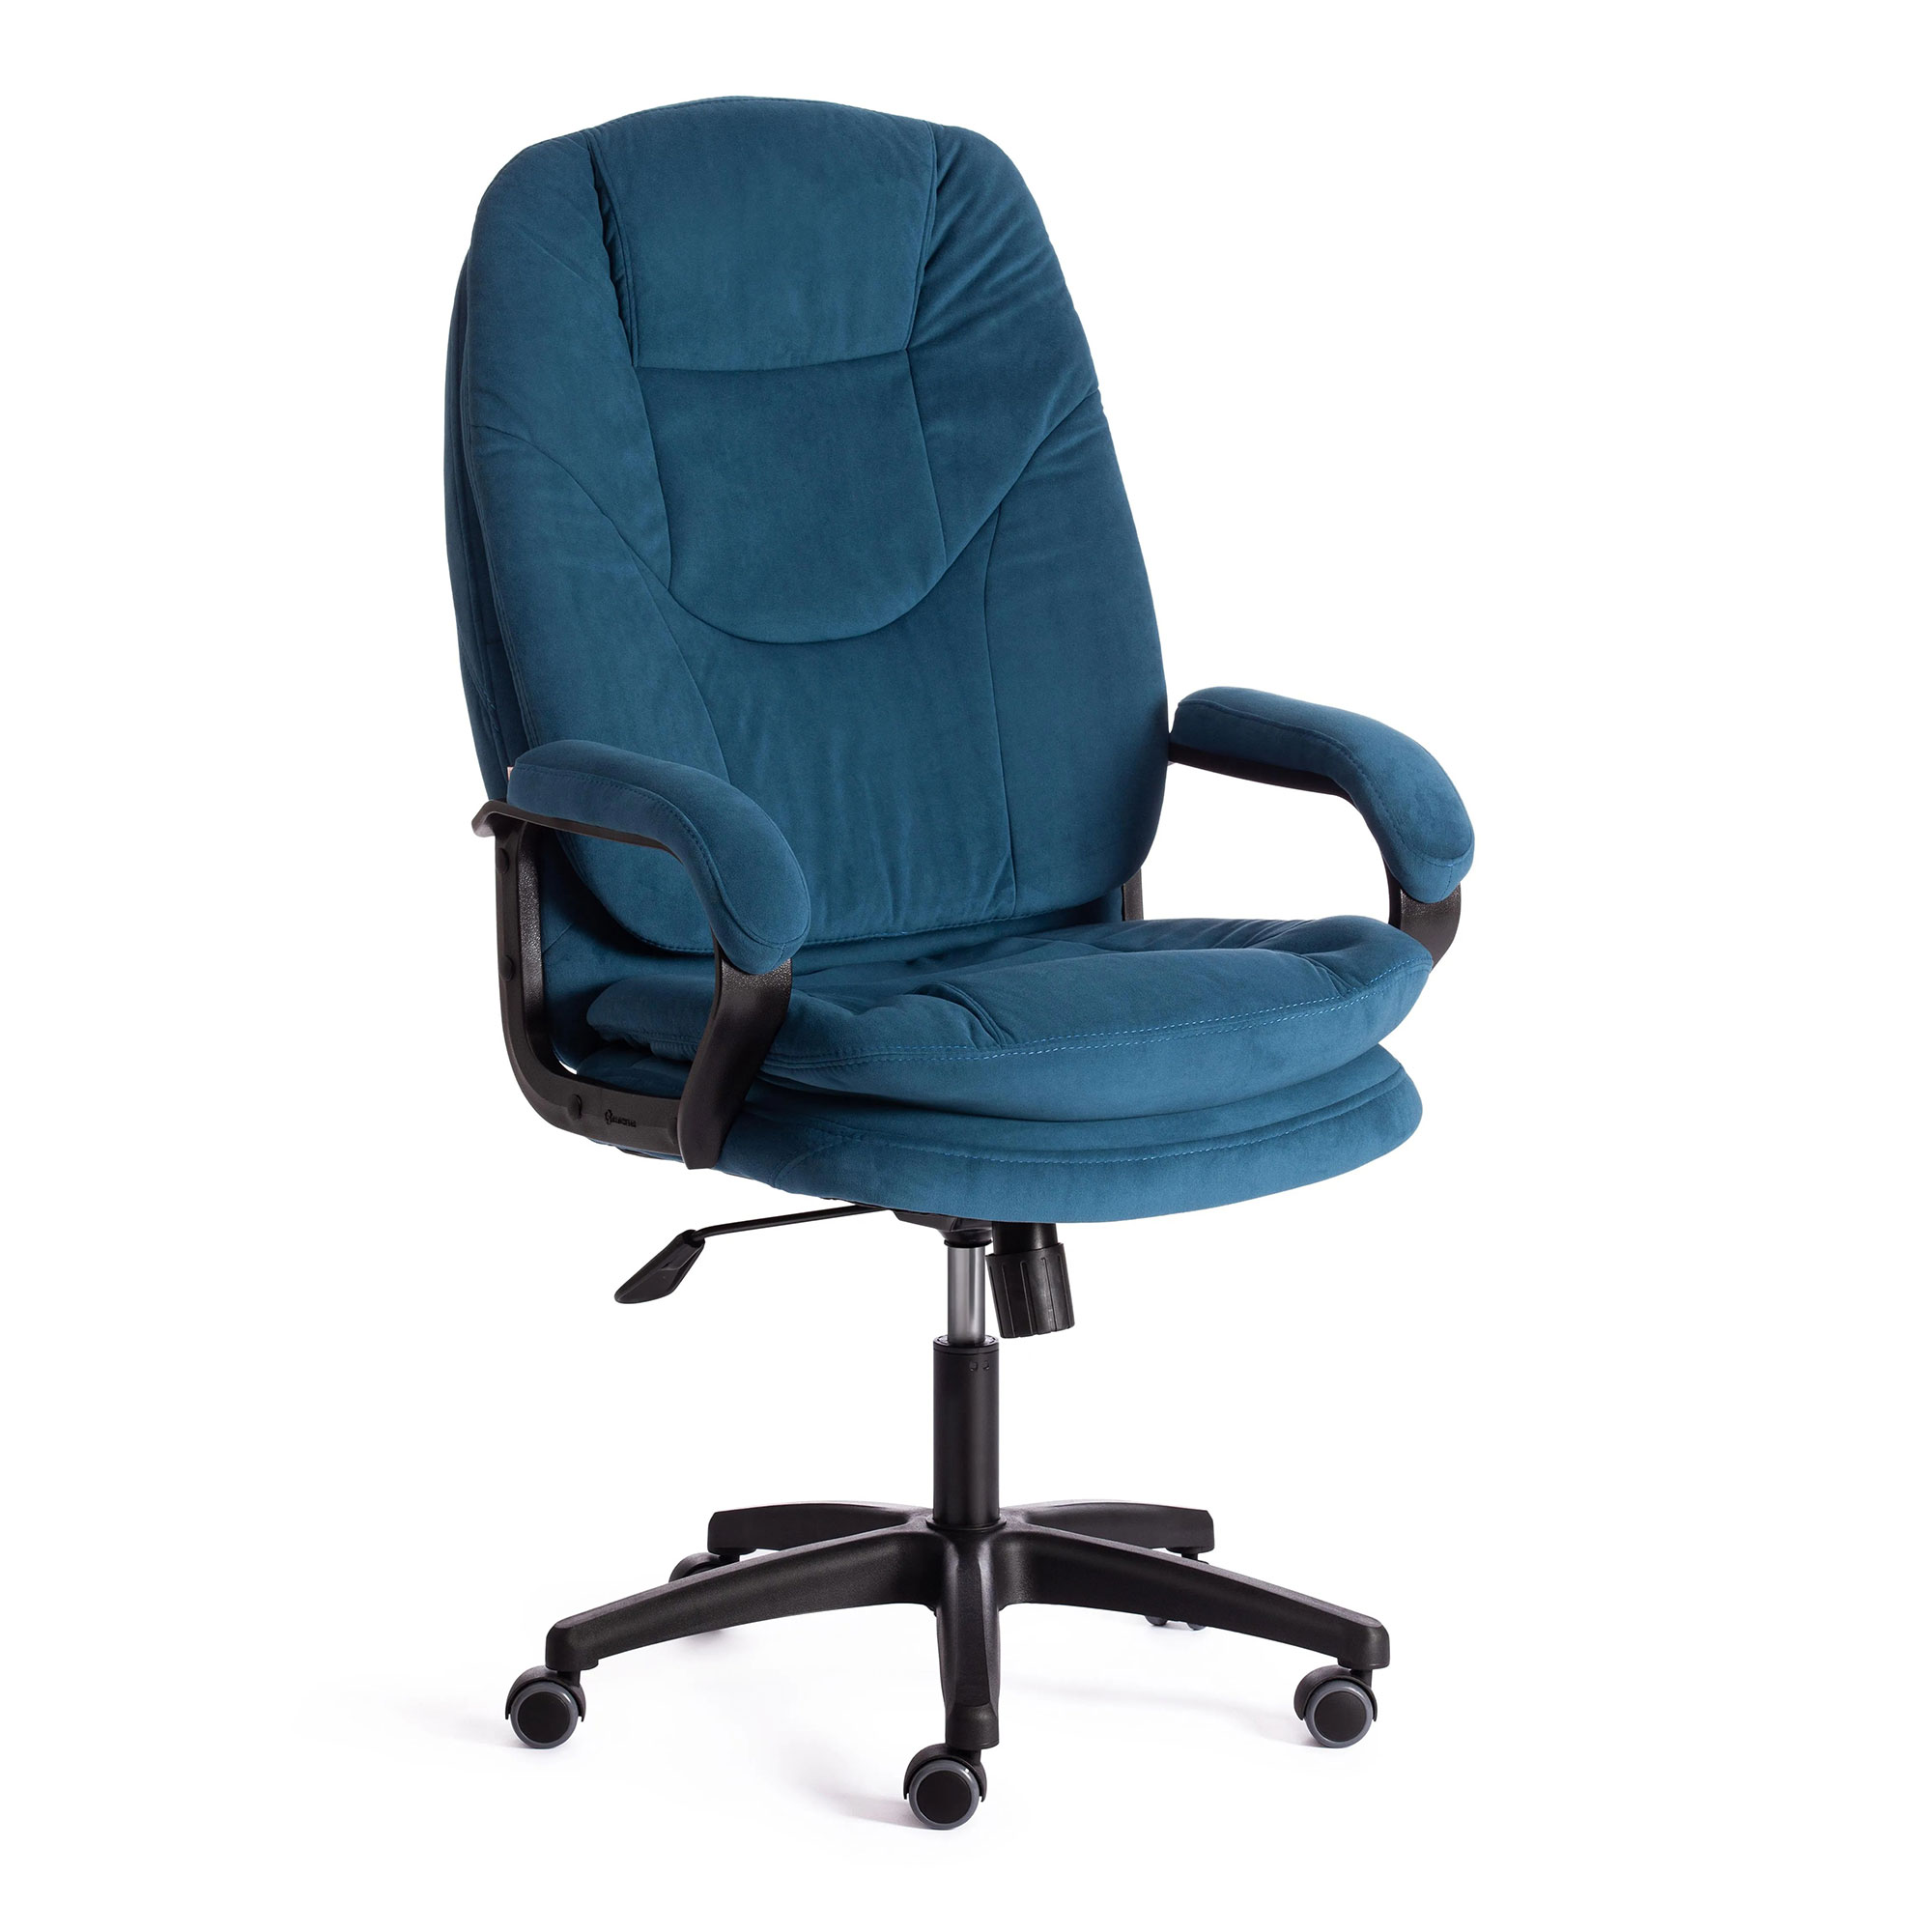 Компьютерное кресло TC Comfort синее 66х46х133 см (19387) кресло компьютерное игровое thermaltake gt comfort c500 черно синий gc gtc bllfdl 01